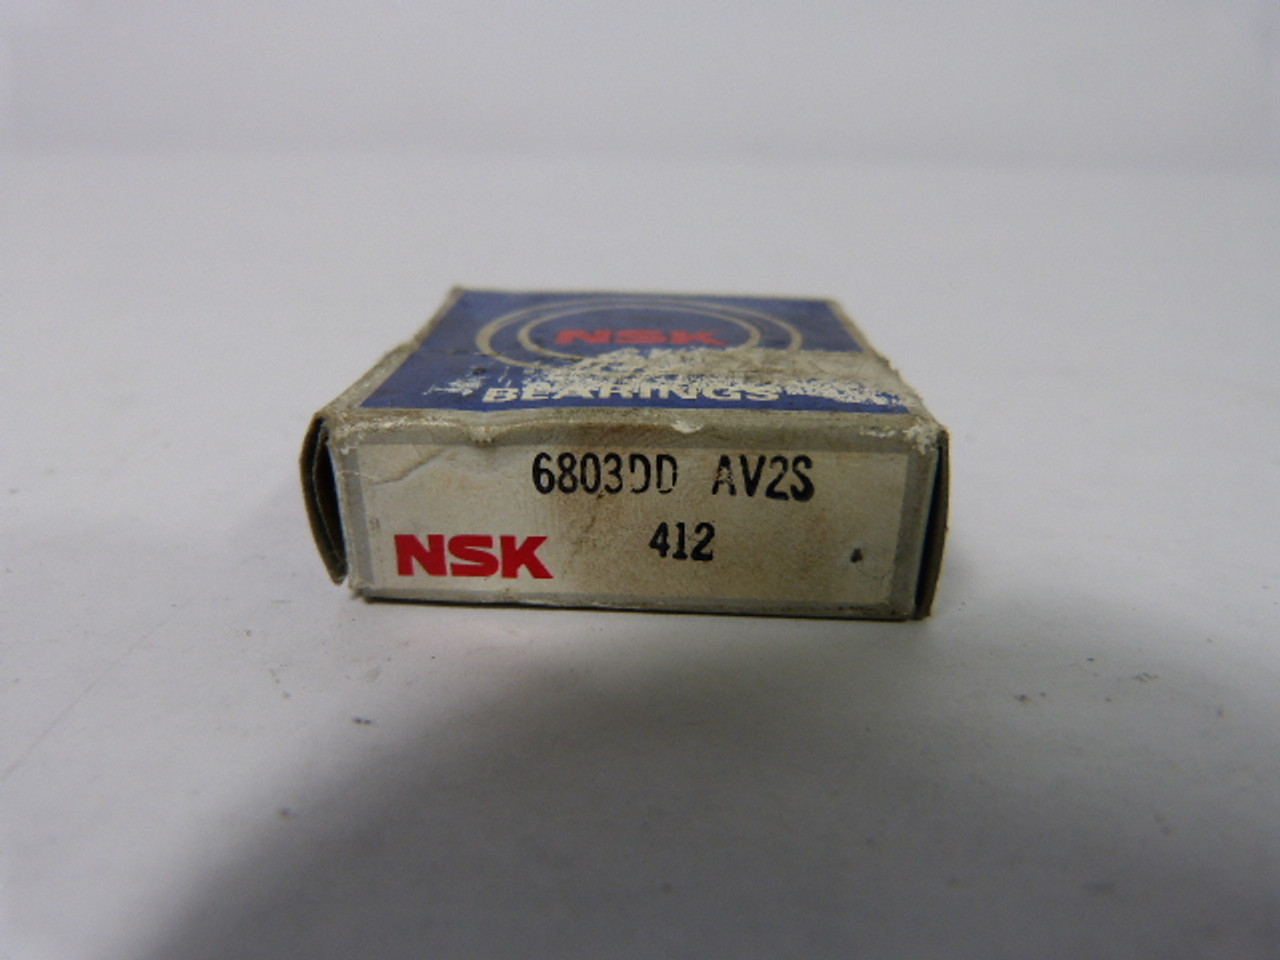 NSK 6803DD AV2S (412) Bearing ! NEW !